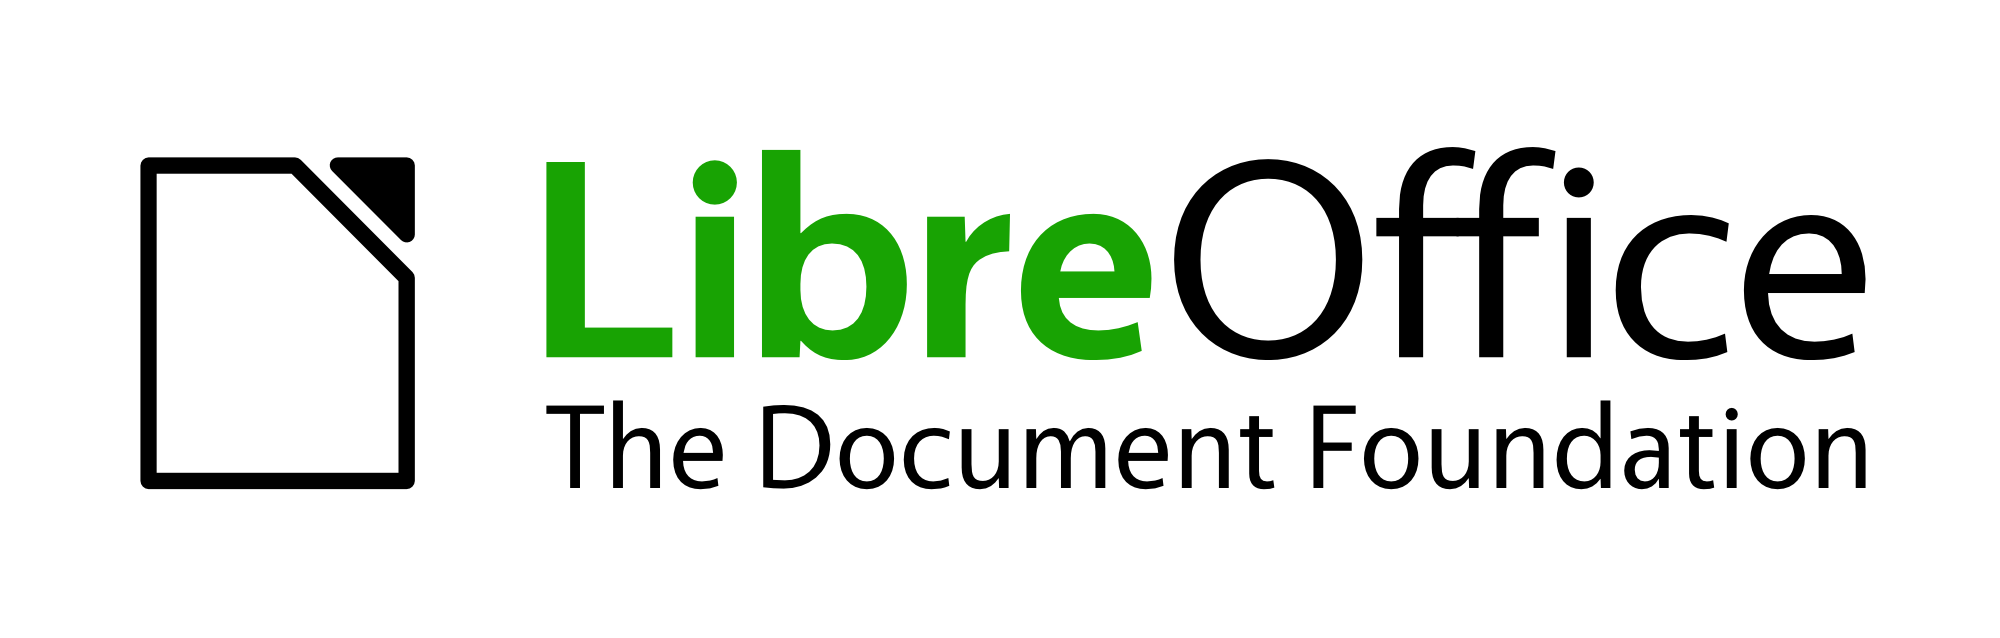 LibreOffice Initial Artwork